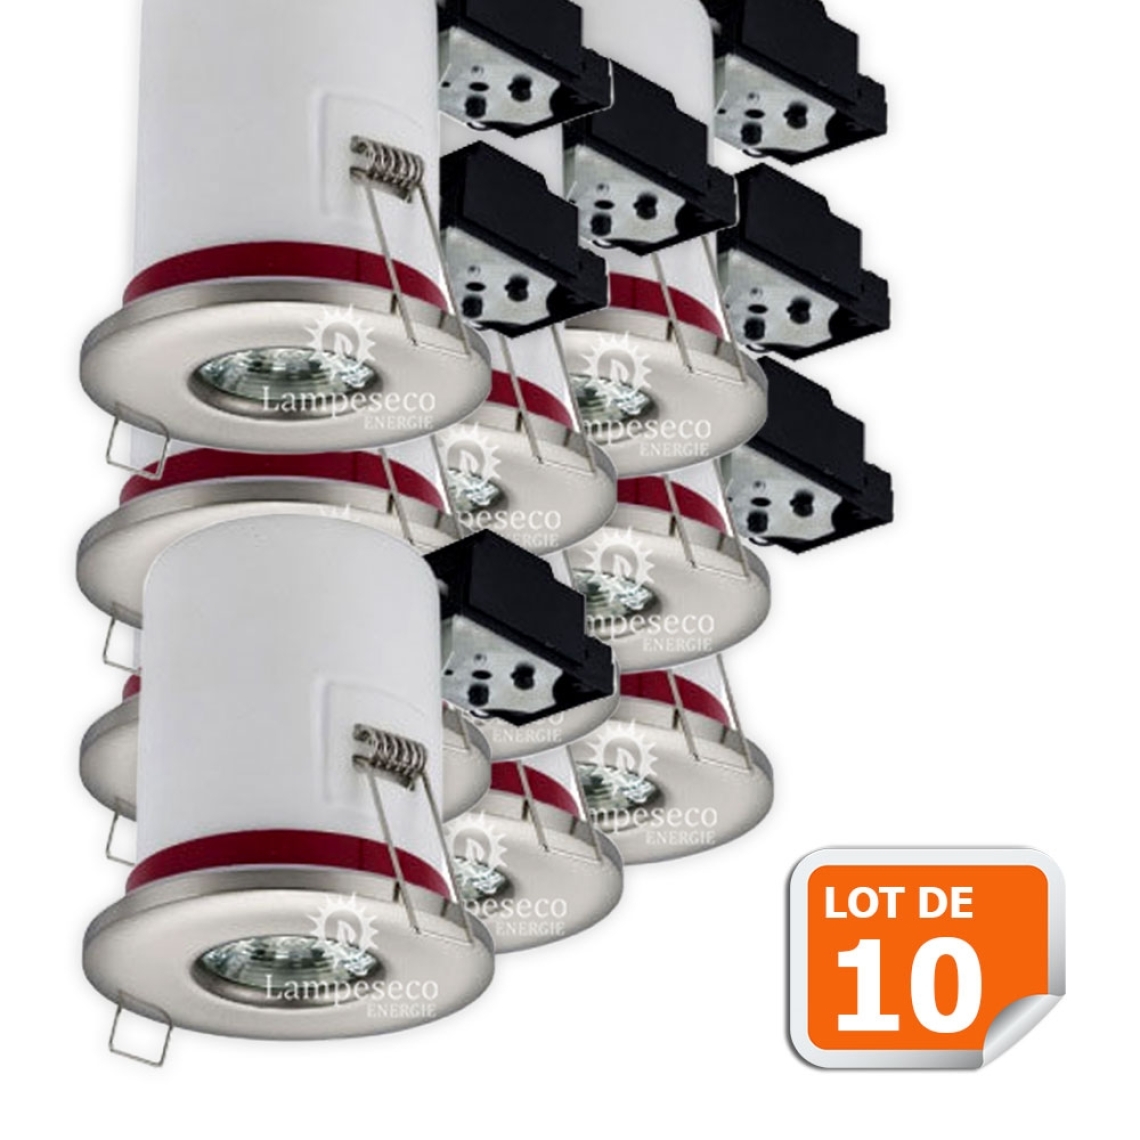 Lampesecoenergie - Lot de 10 Support de spot BBC Etanche IP65 Inox 87mm avec douille GU10 automatique ref. 830 - Moulures et goulottes